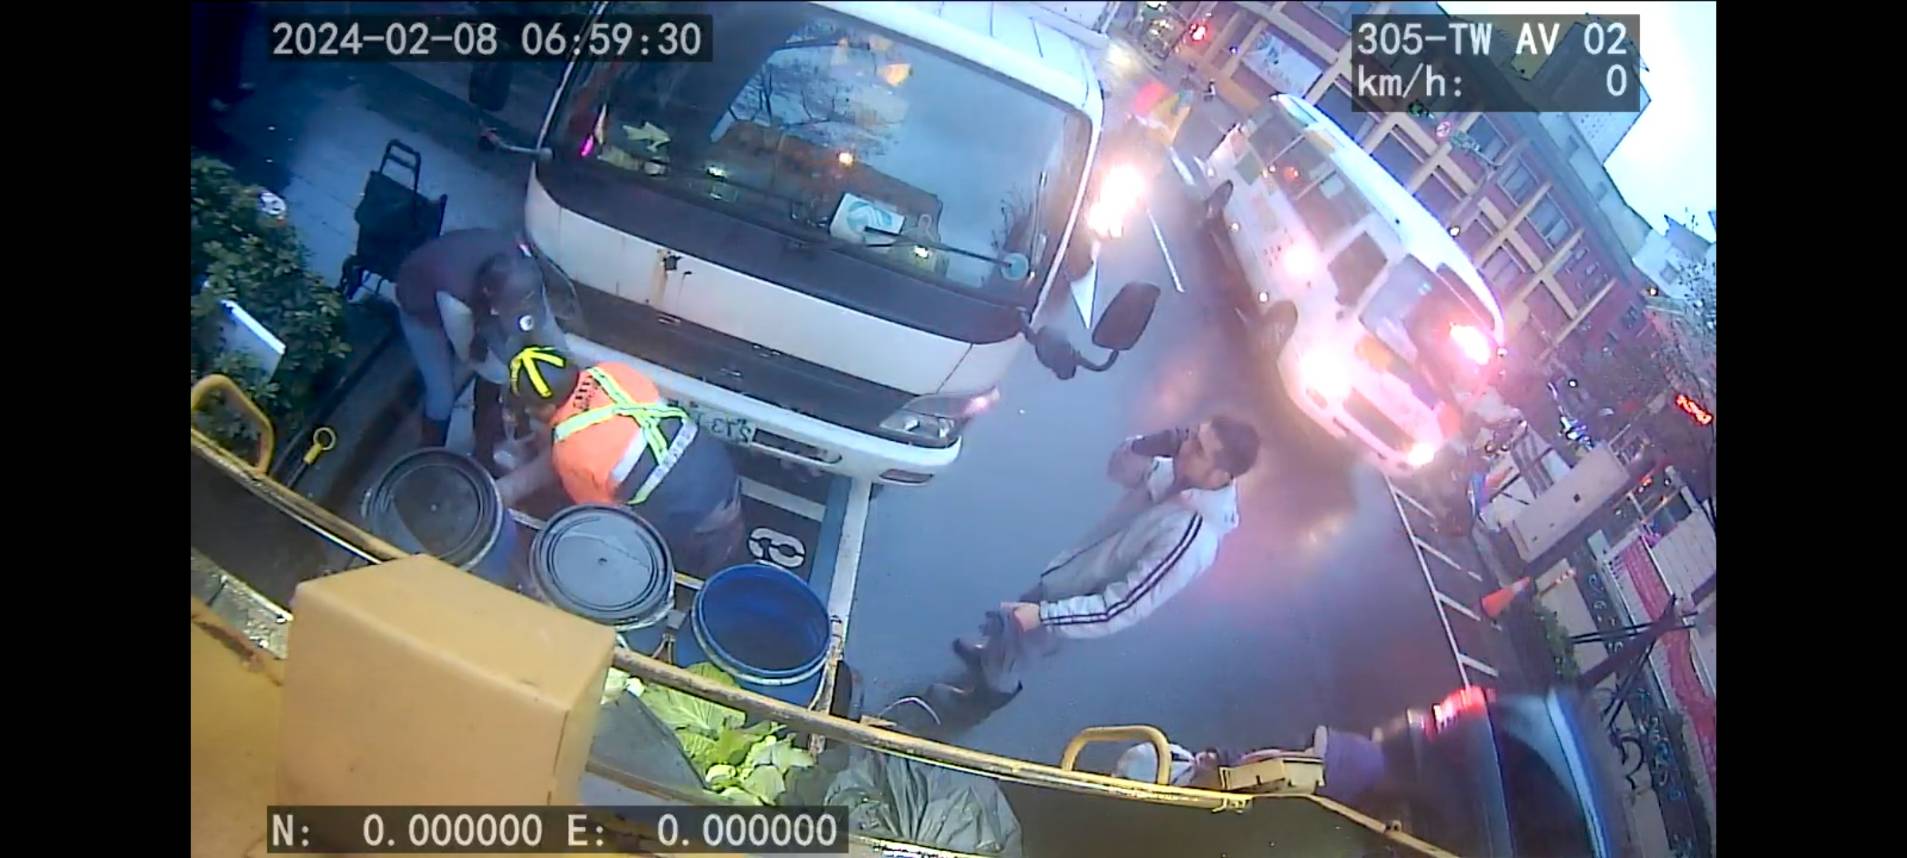 監視器拍下的基隆市環保局回收車誤傷民眾的畫面。(圖/基隆市政府提供)